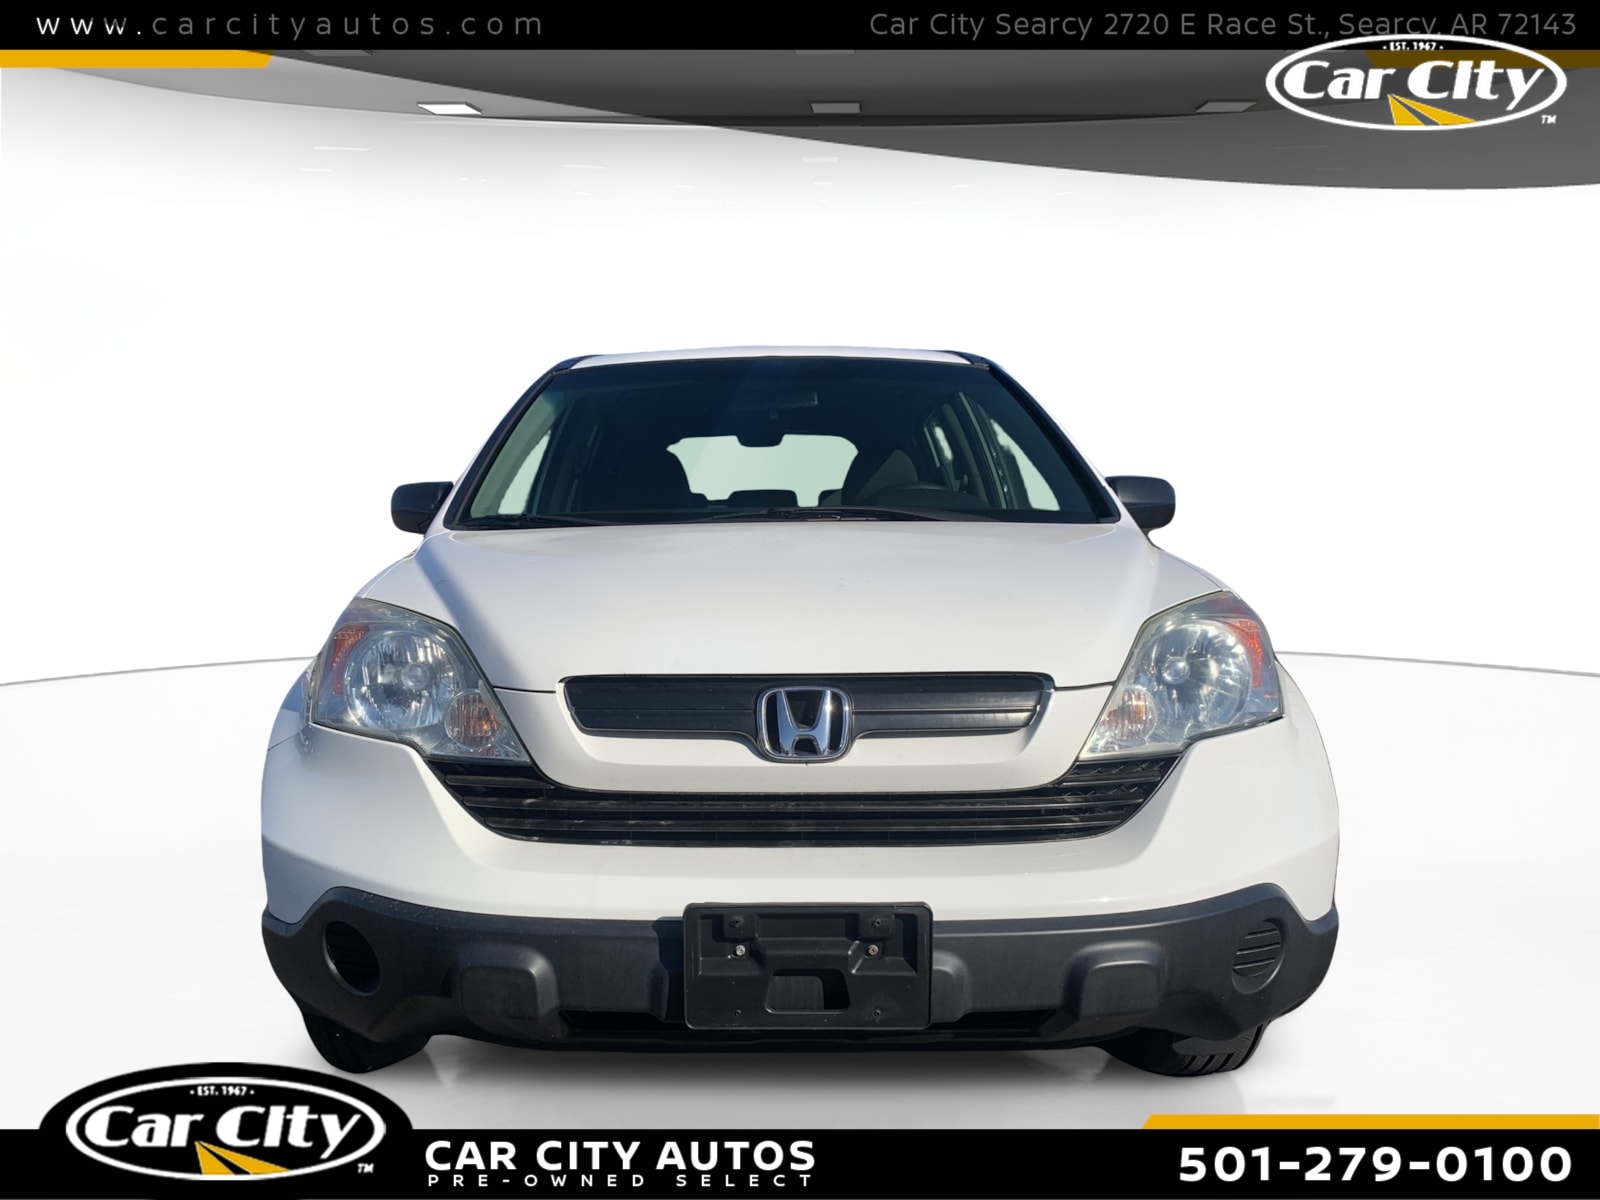 2009 Honda CR-V LX 2WD  - 9G708268  - Car City Autos